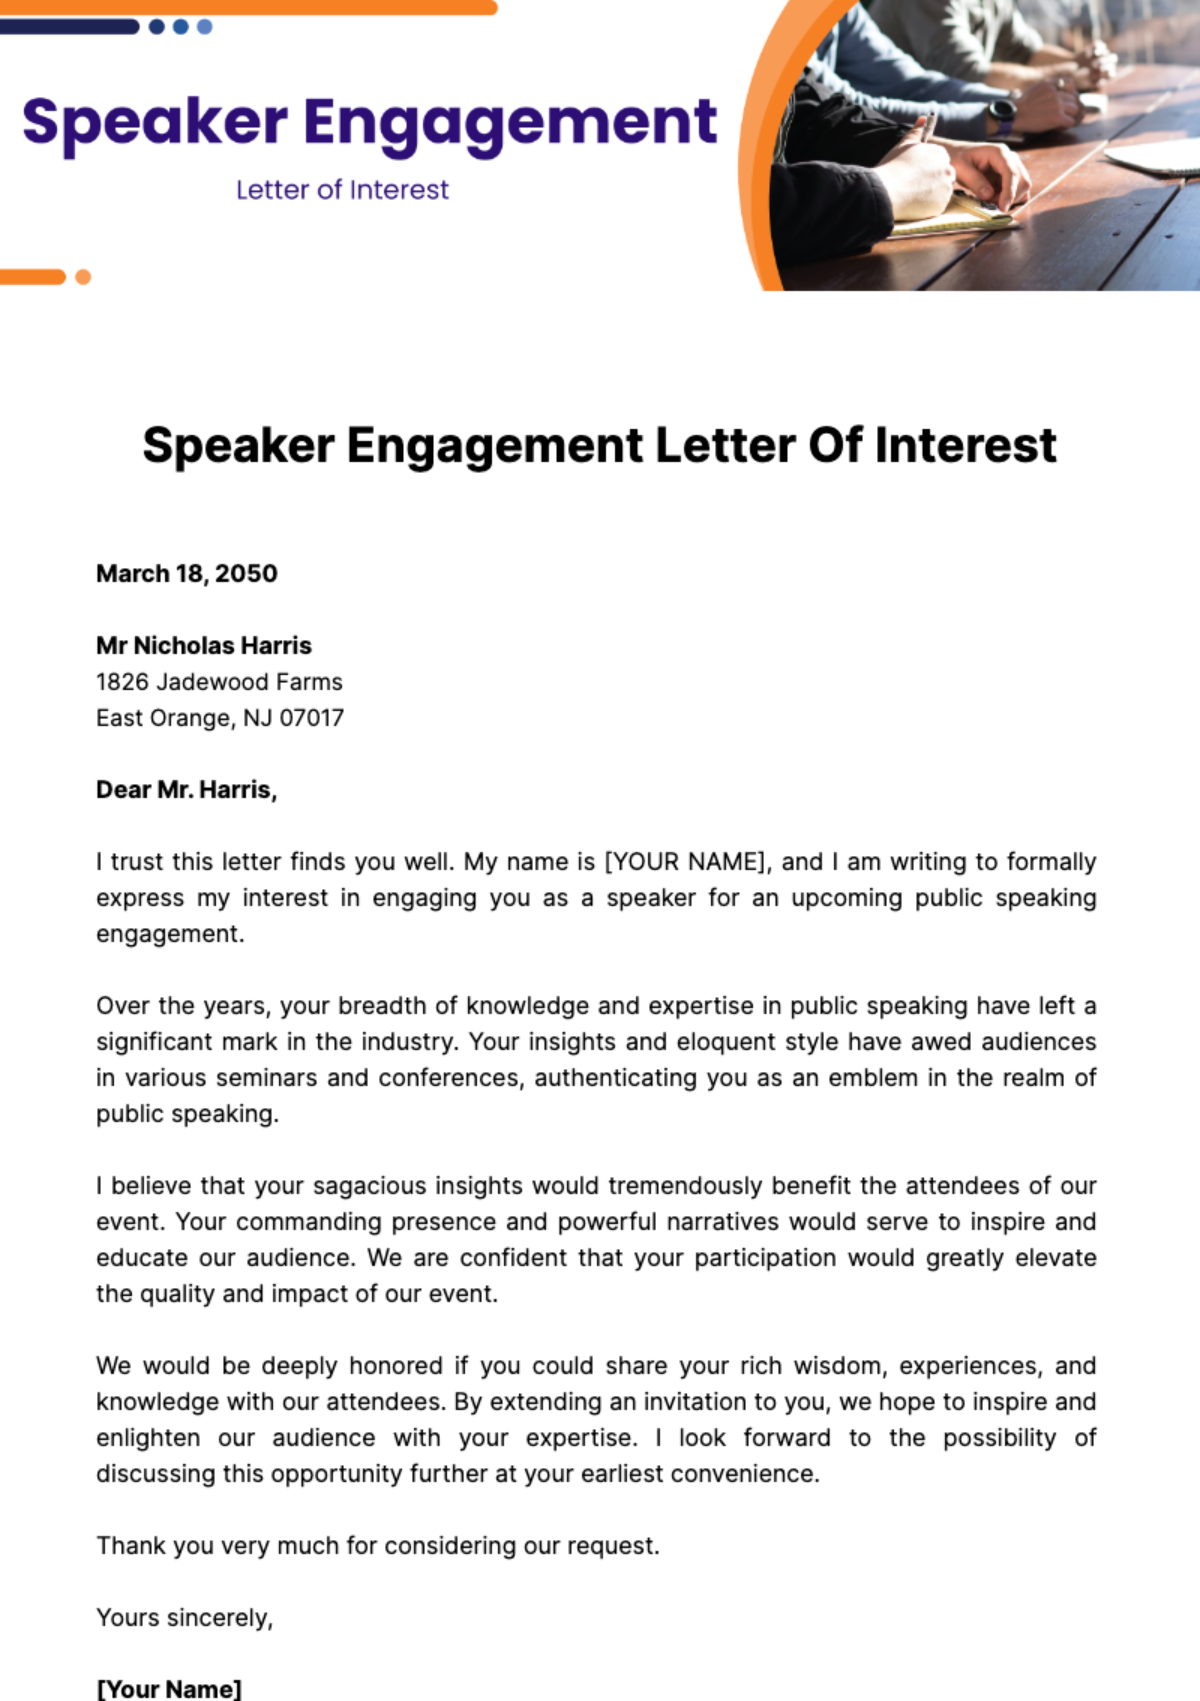 Speaker Engagement Letter of Interest Template